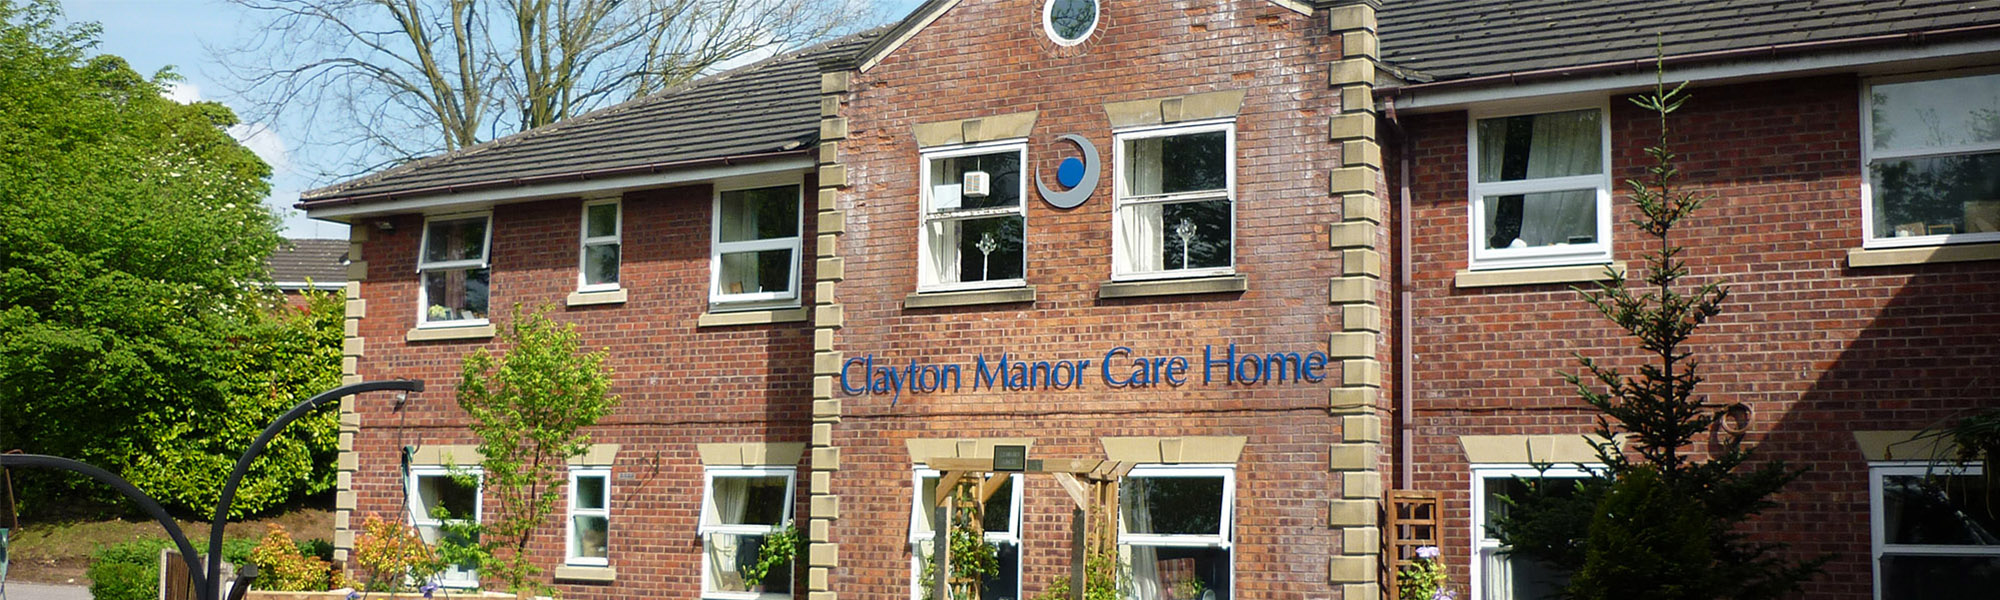 Clayton Manor Banner